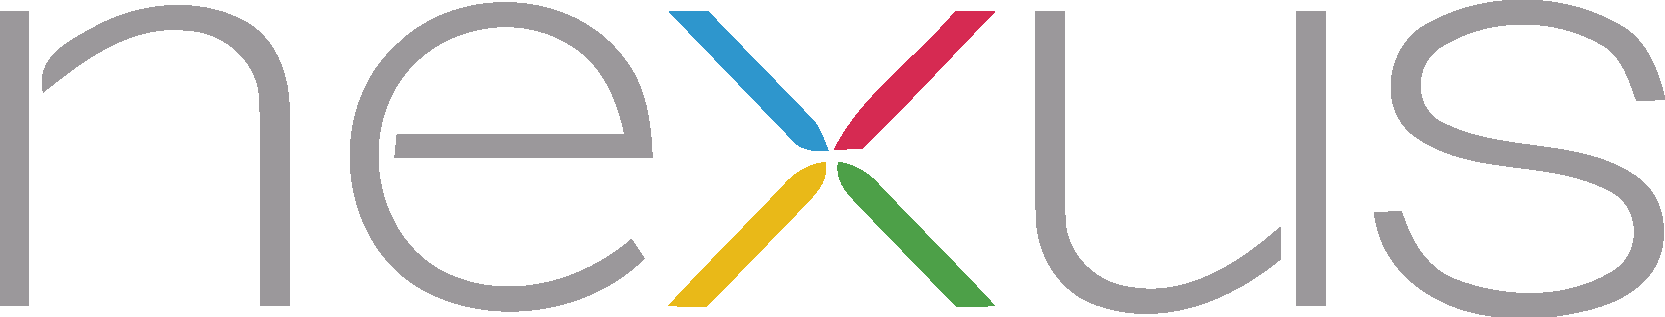 Nexus Logo [Google] png